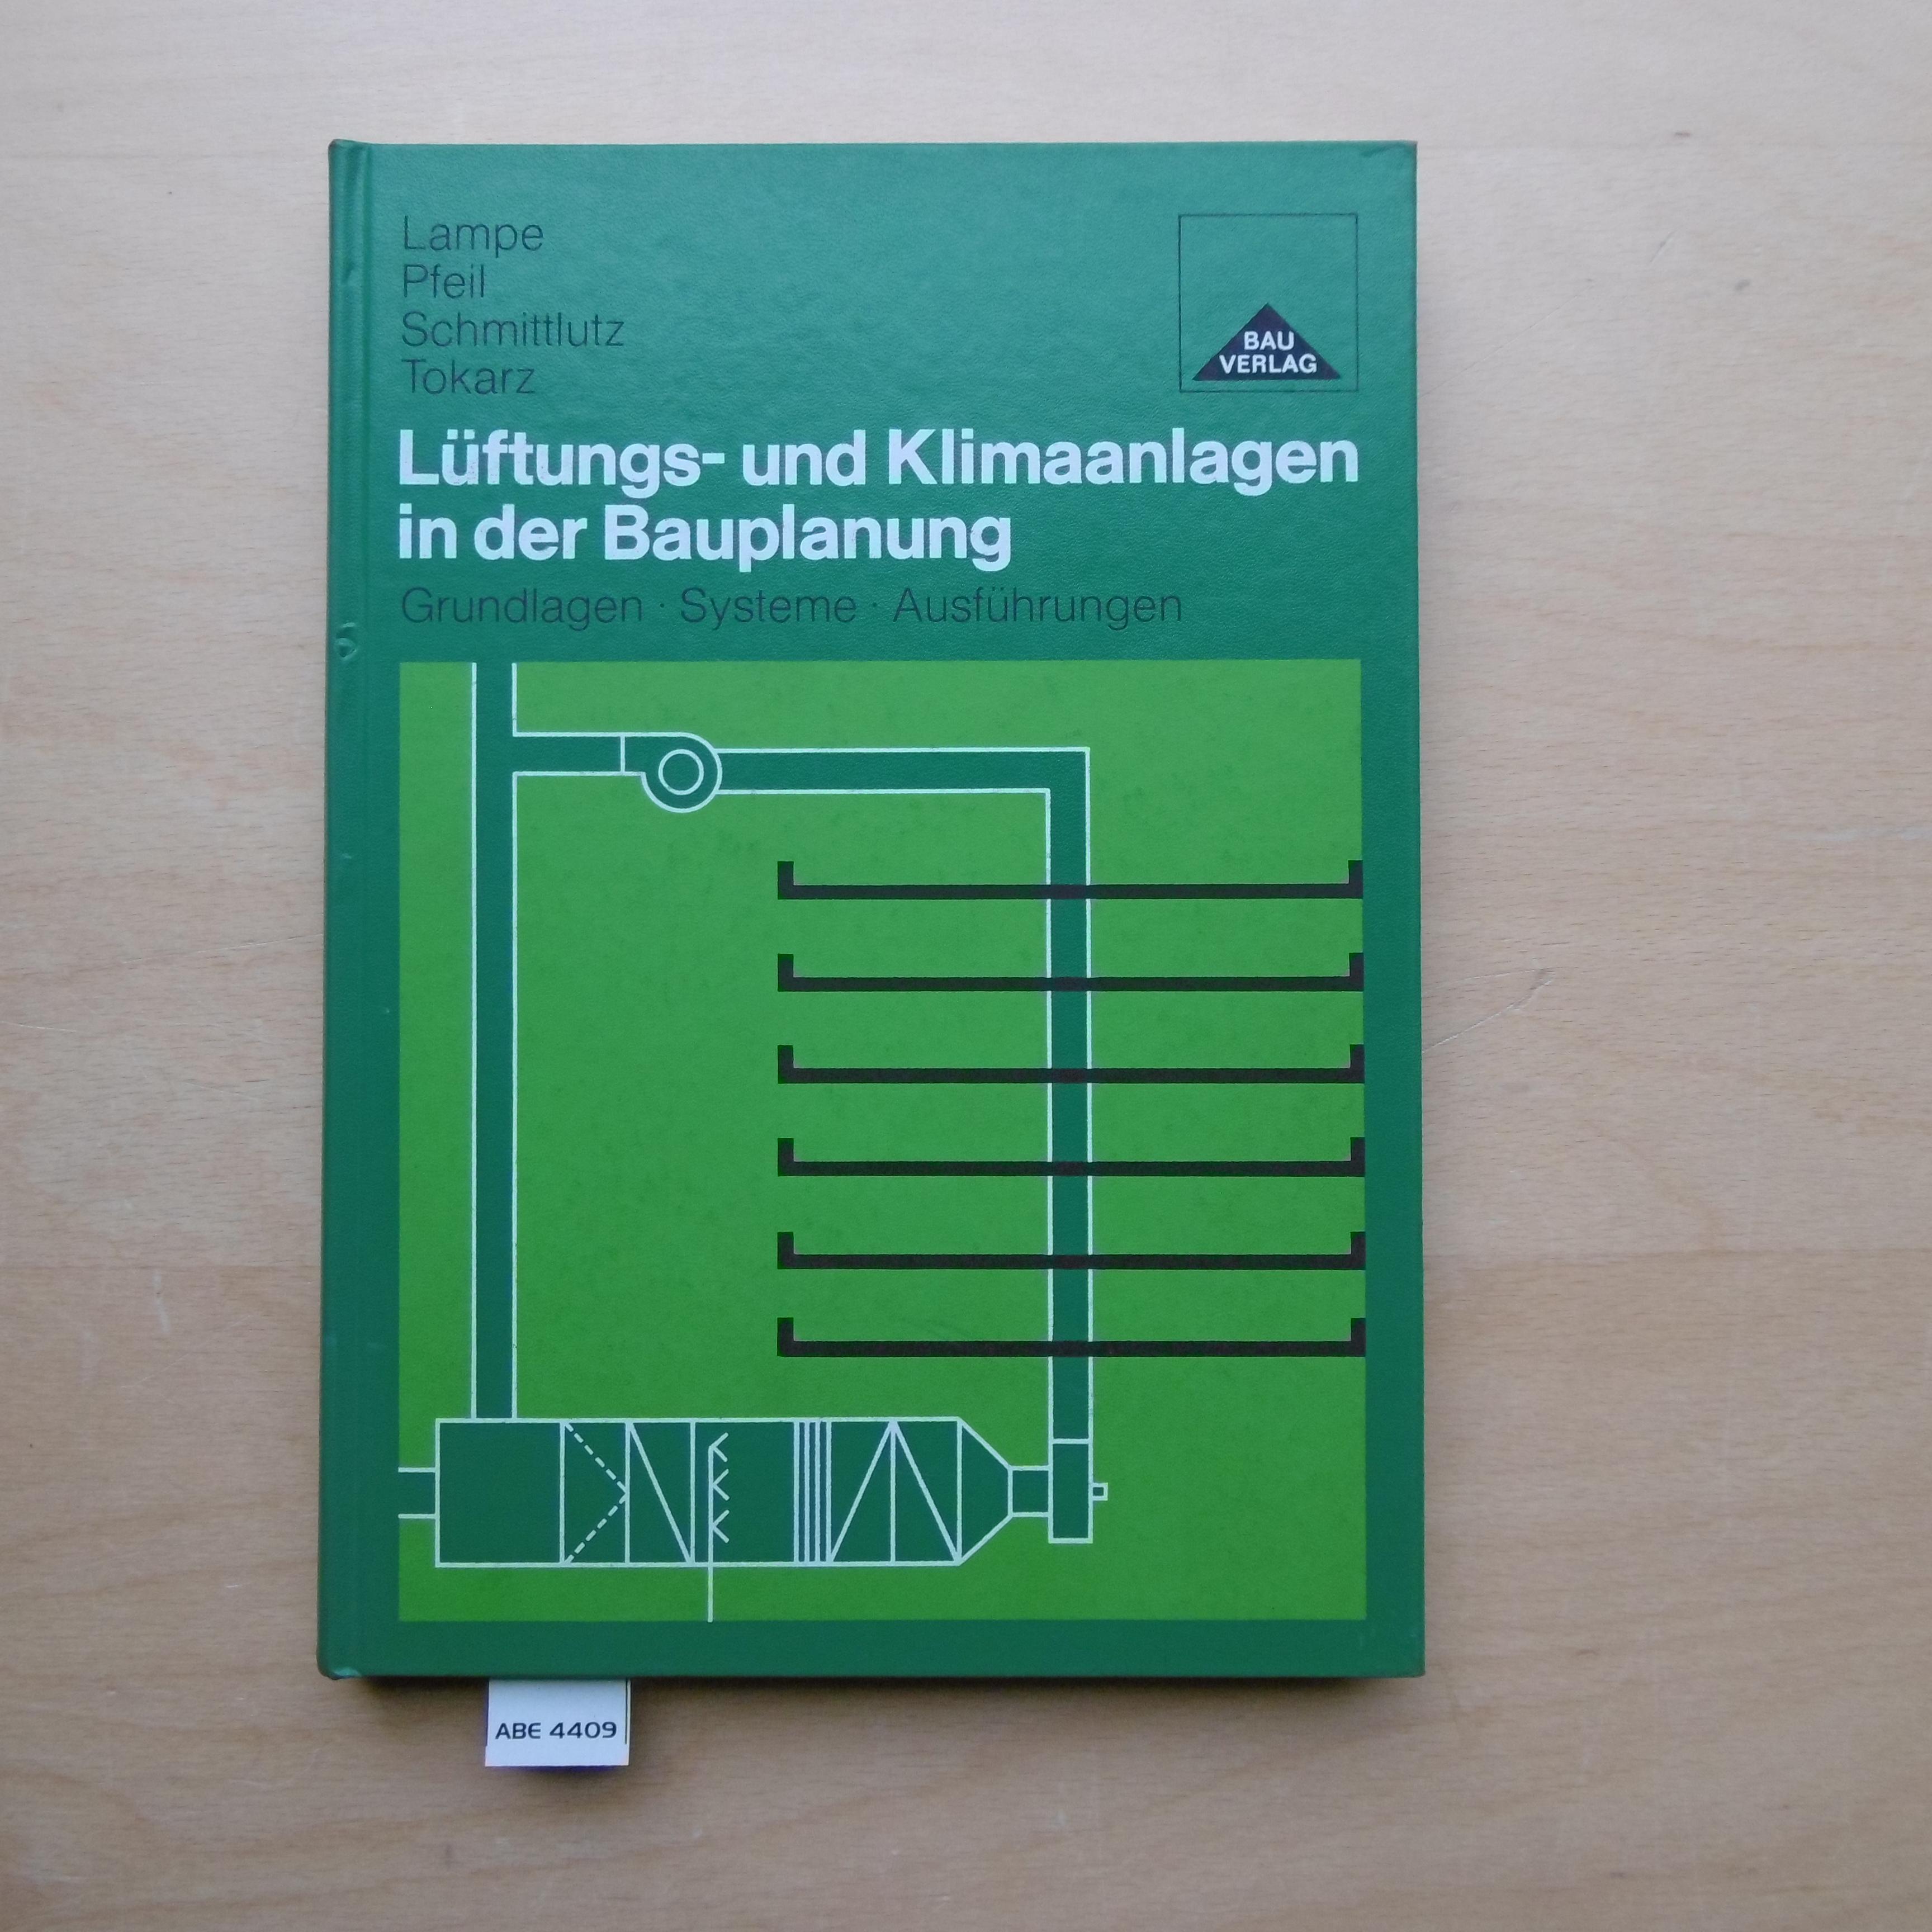 Lüftungs- und Klimaanlagen in der Bauplanung : Grundlagen, Systeme, Ausführungen. - Lampe, Gerhard